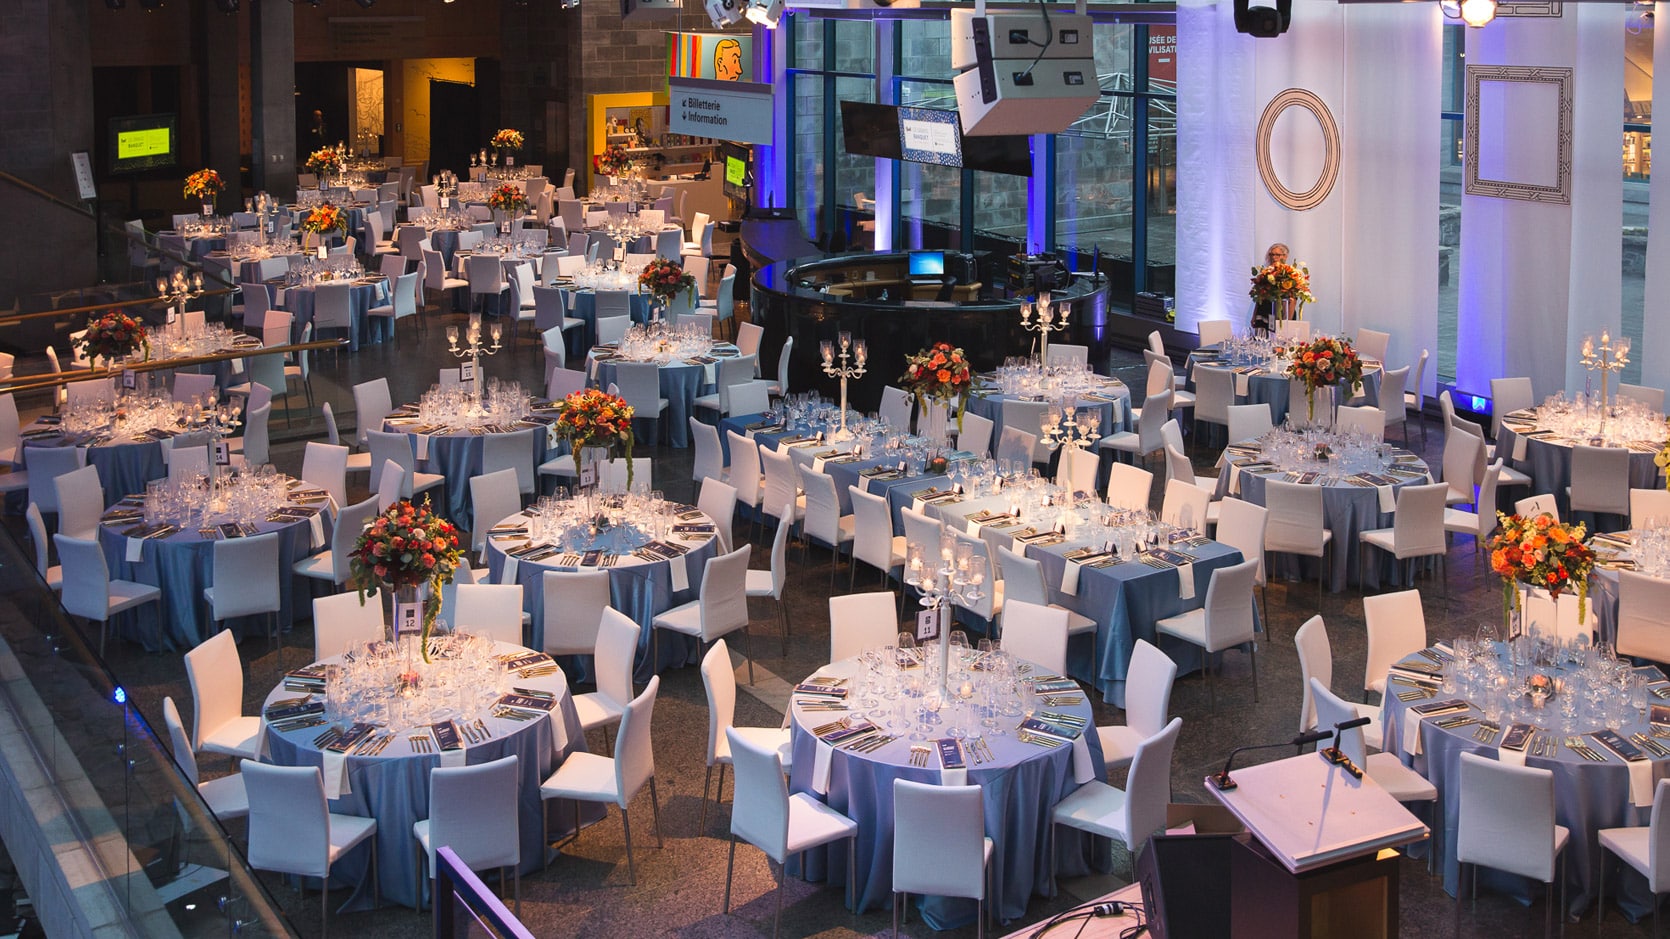 Le Hall du Musée en formule banquet, on y voit plusieurs tables rondes nappés en gris avec des chaises blanches, une grande table d'honneur et des arrangements floraux et des chandeliers.